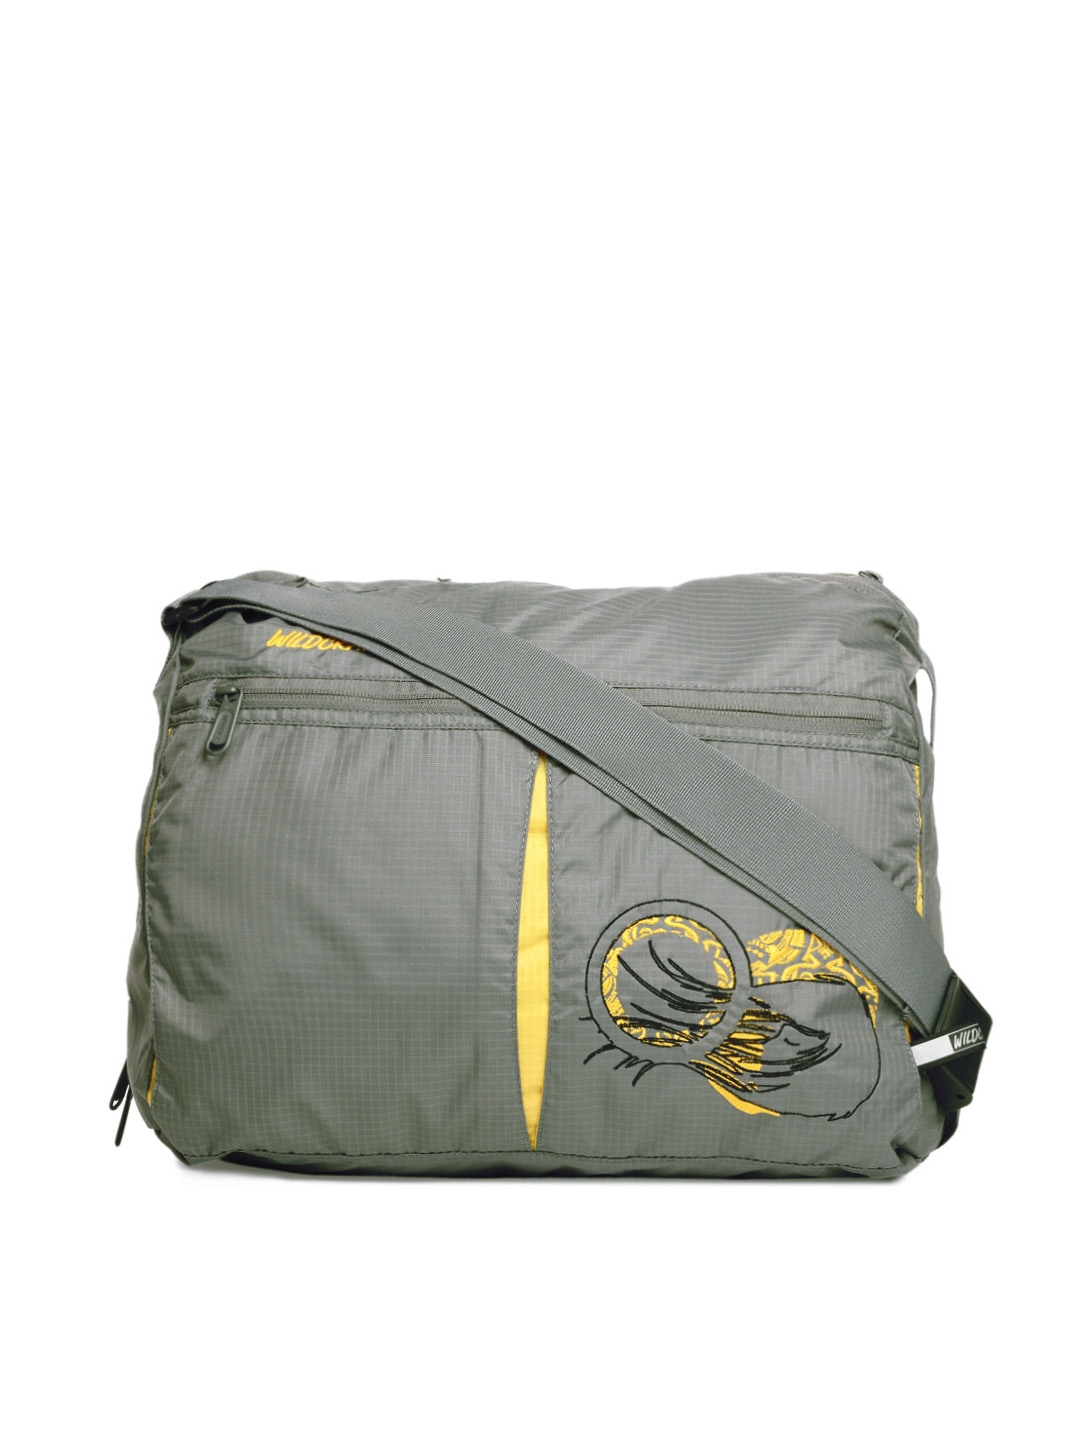 wildcraft grabit sling bag